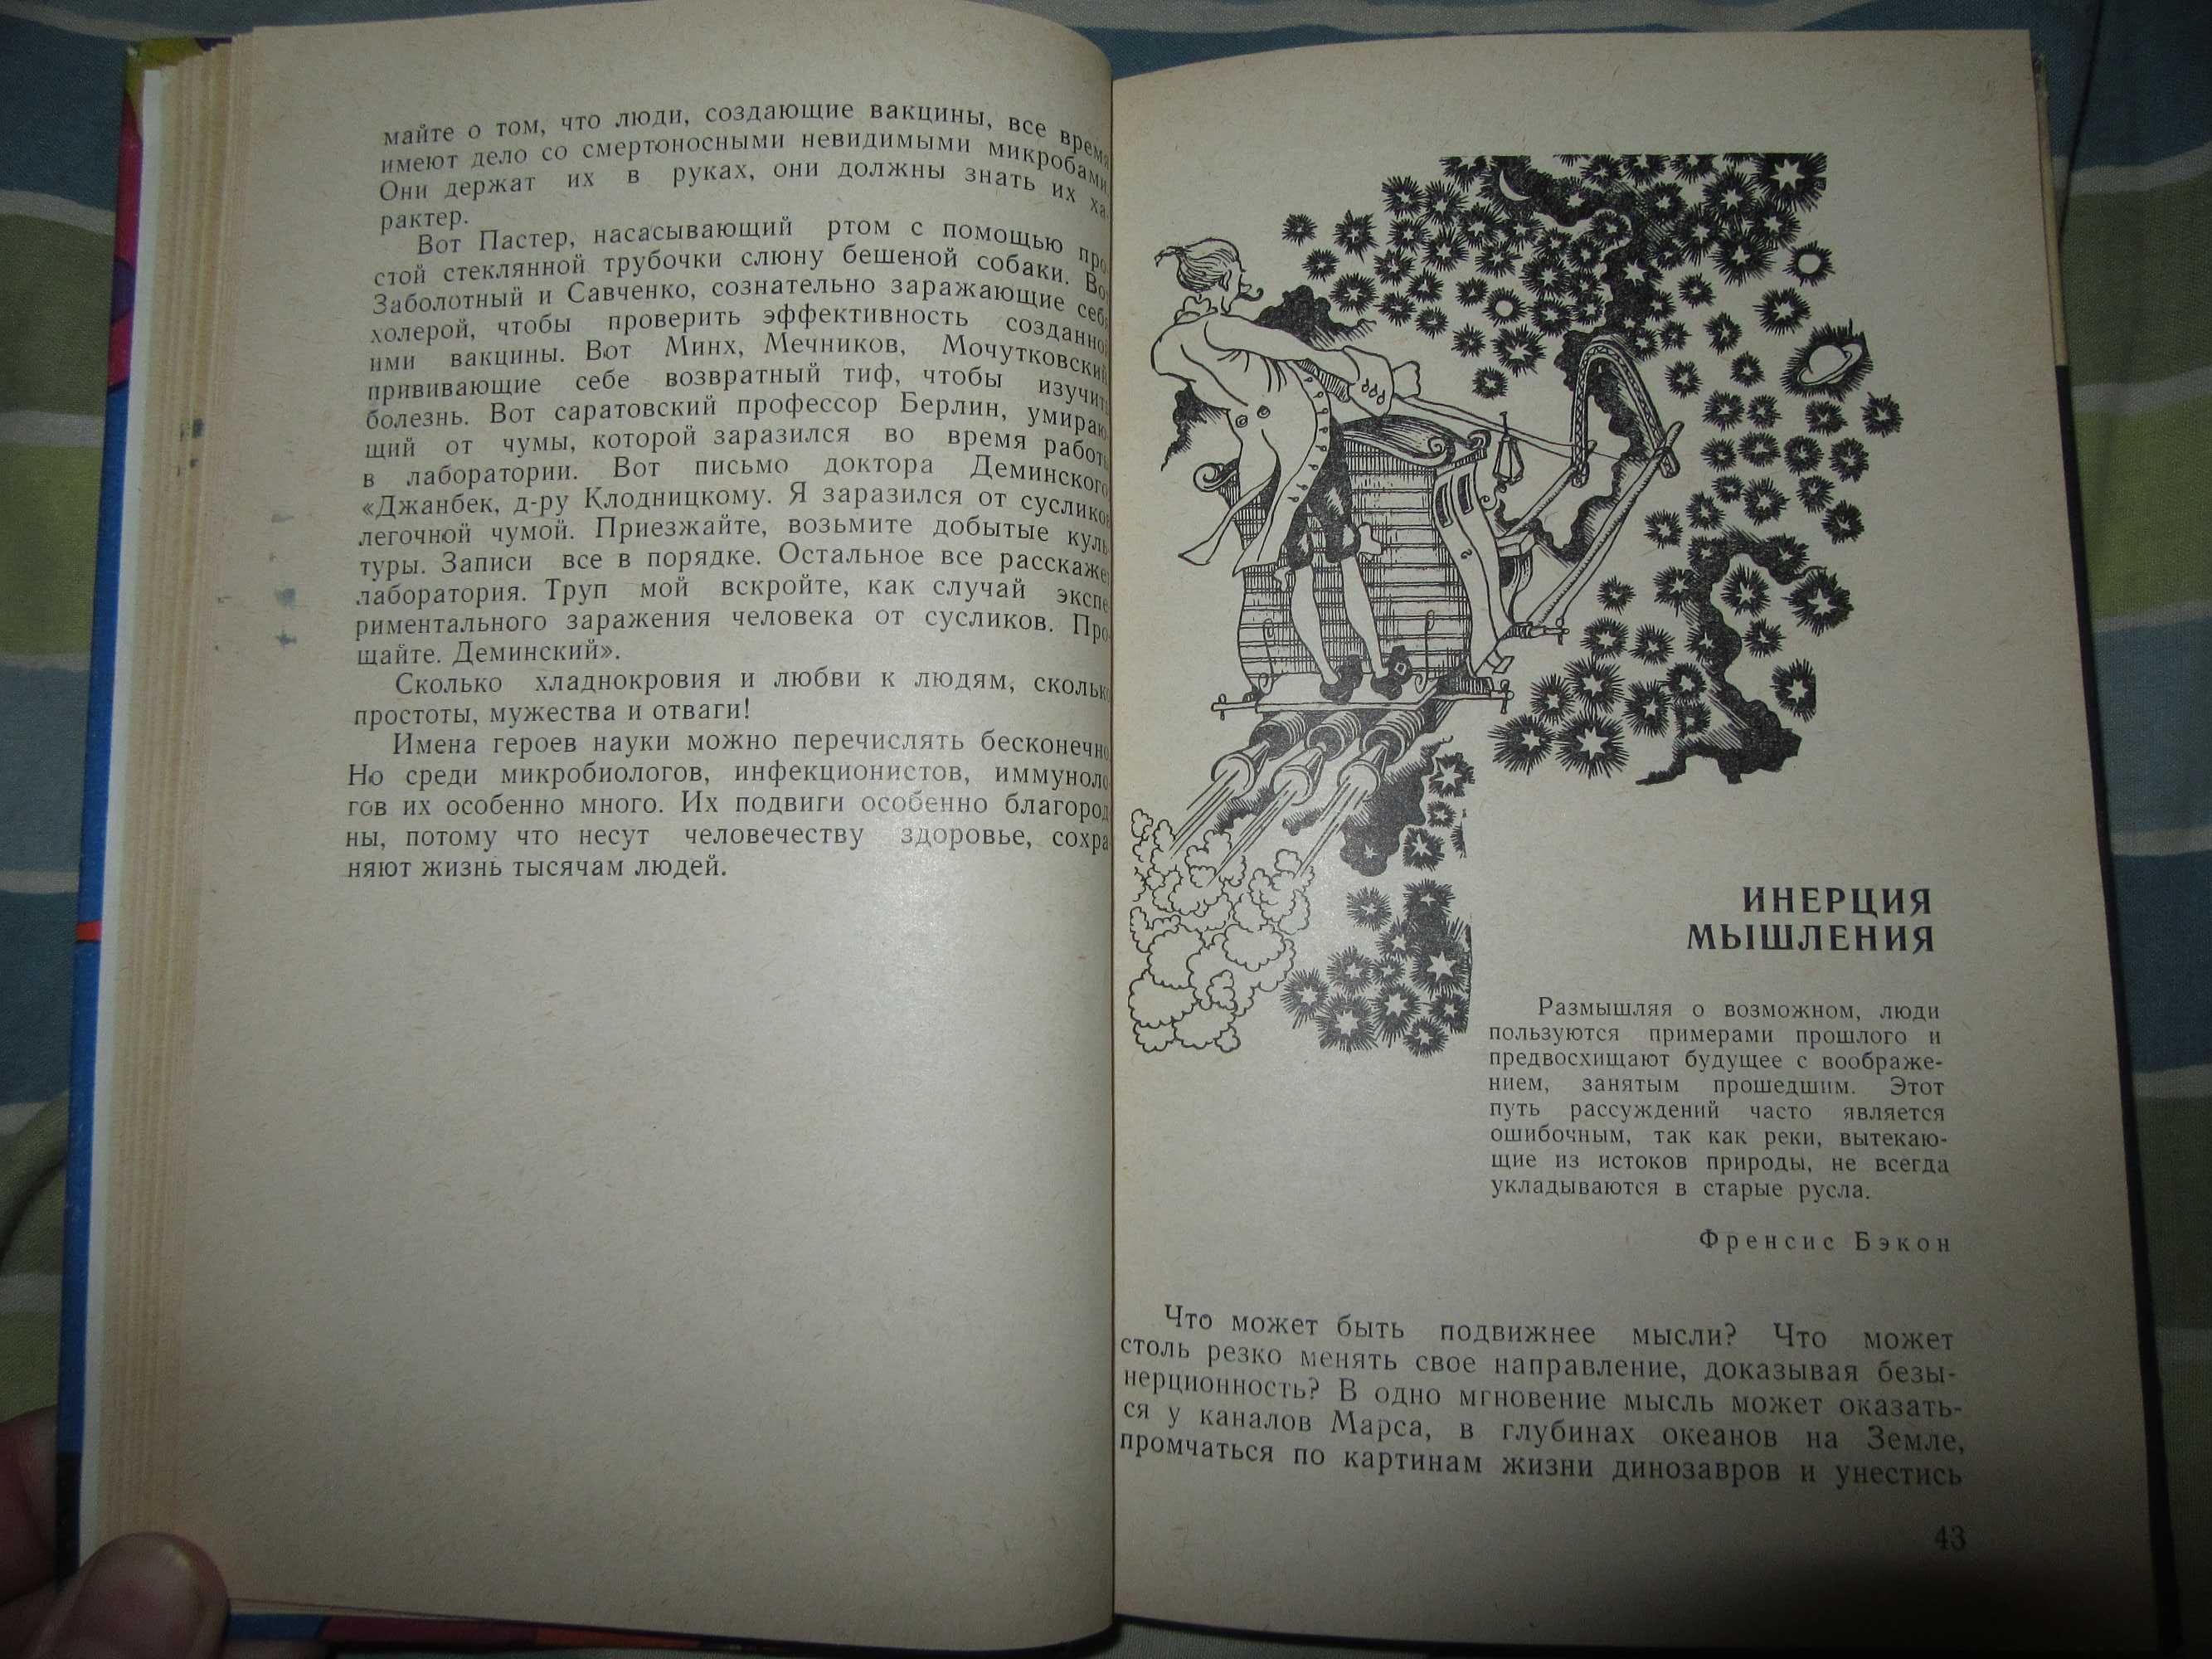 Сфинксы XX века. Рэм Петров."Молодая гвардия",1971 г.